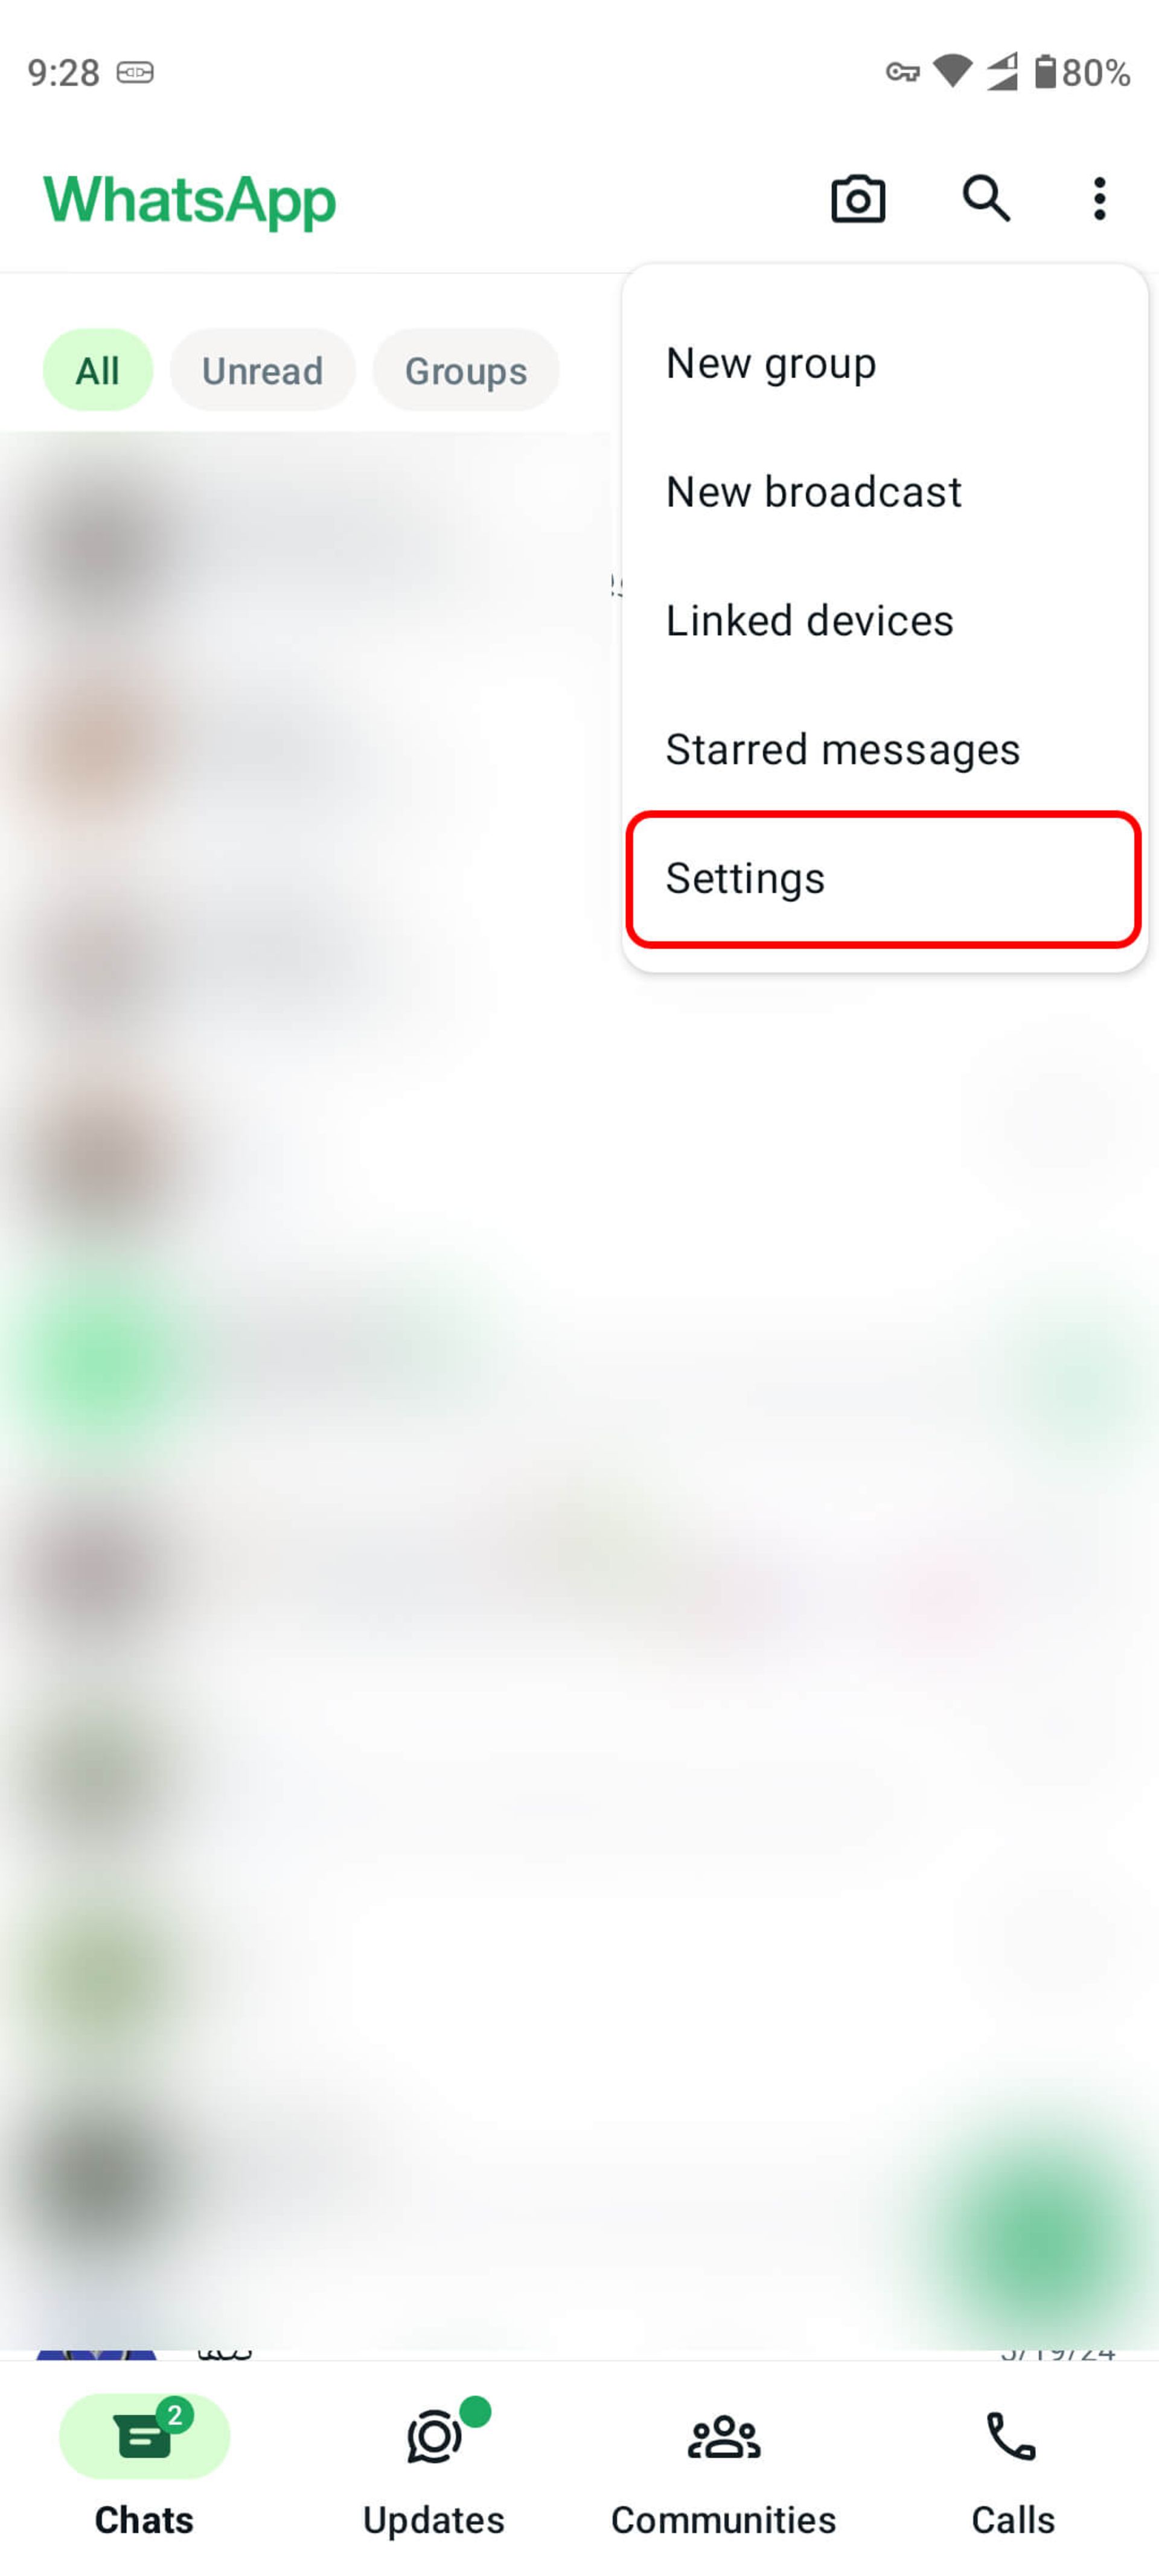 بازکردن واتساپ و انتخاب تنظیمات (Settings) برای پیدا کردن شماره واتساپ